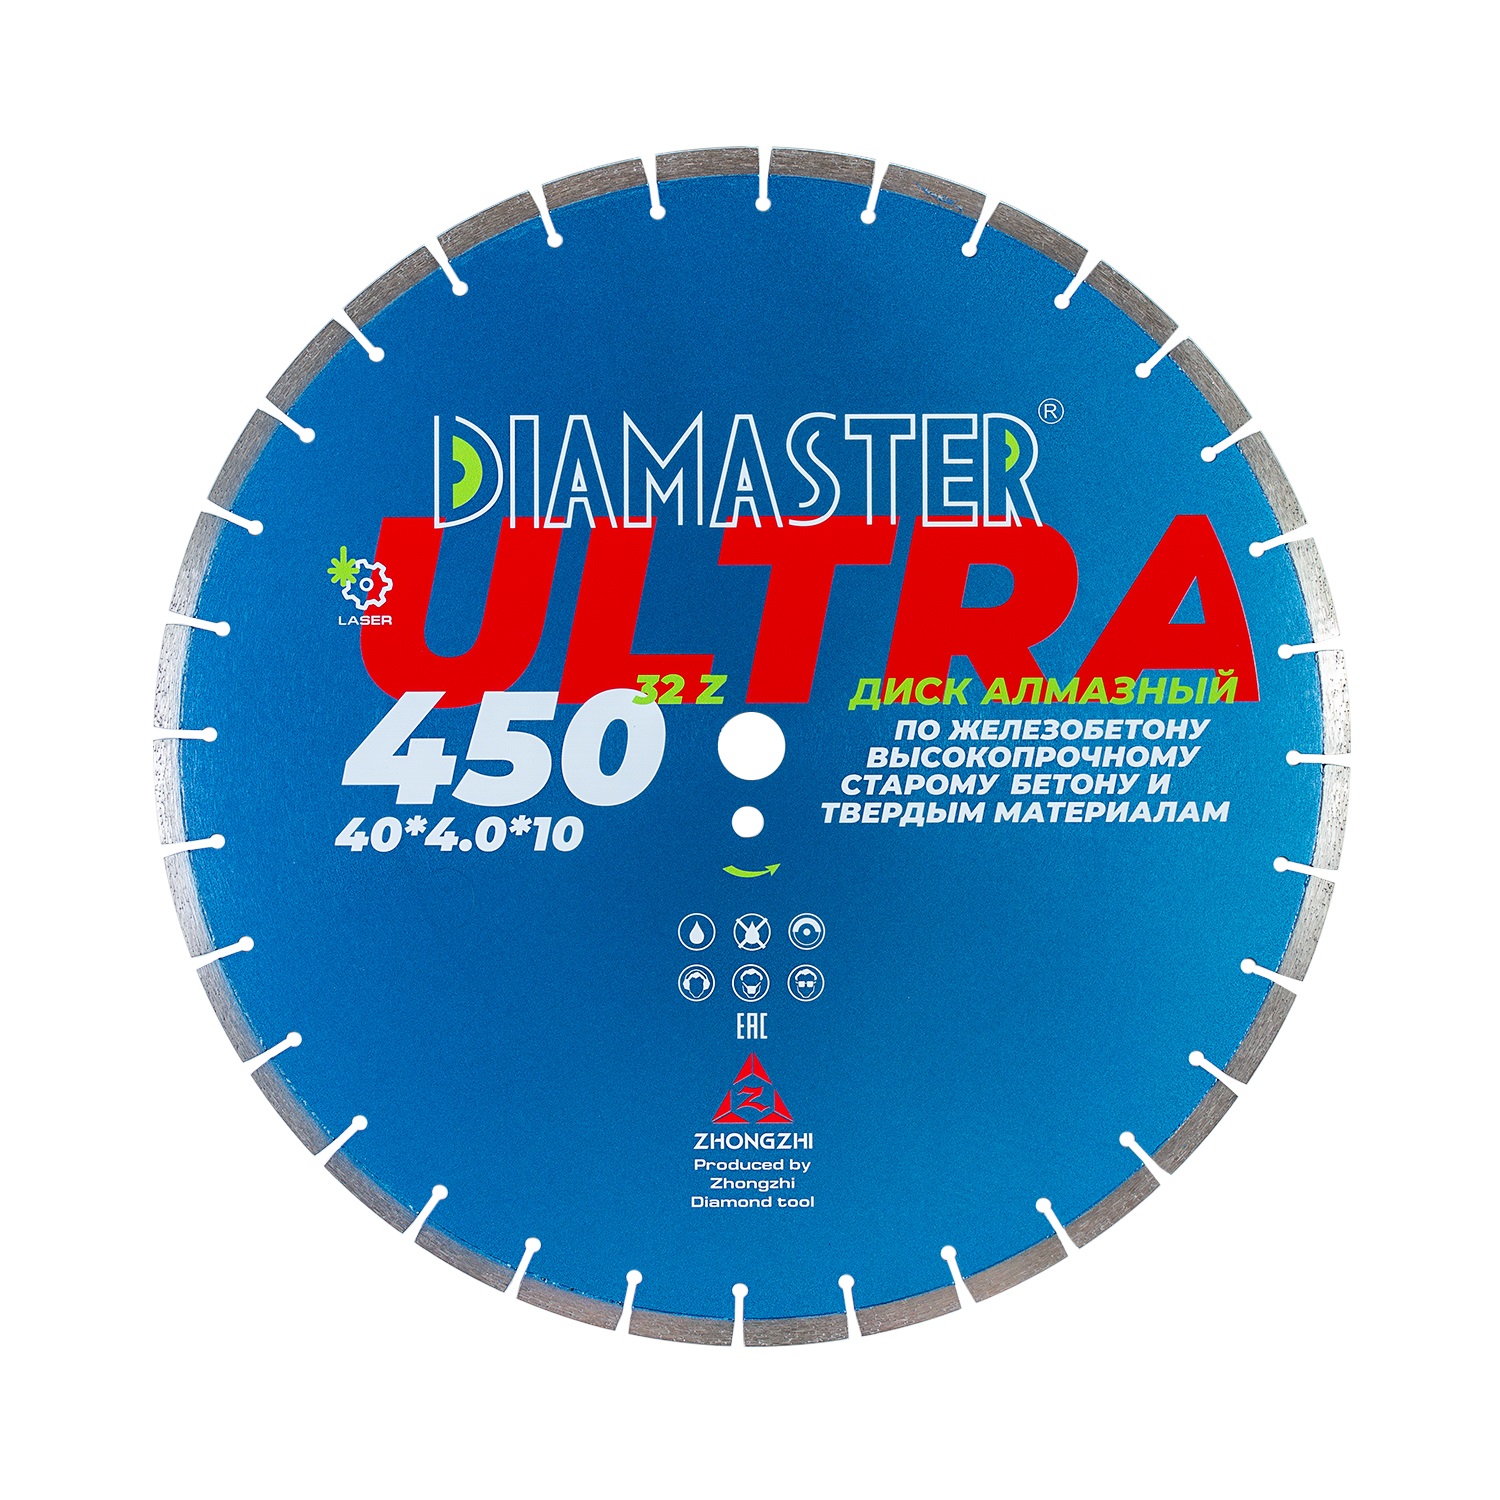 Диск сегментный Laser ULTRA д.450*2,8*25,4 (40*4,0*10)мм | 32z/железобетон/wet/dry DIAMASTER диск сегментный laser ultra д 400 2 6 25 4 40 3 6 10 мм 28z железобетон wet dry diamaster